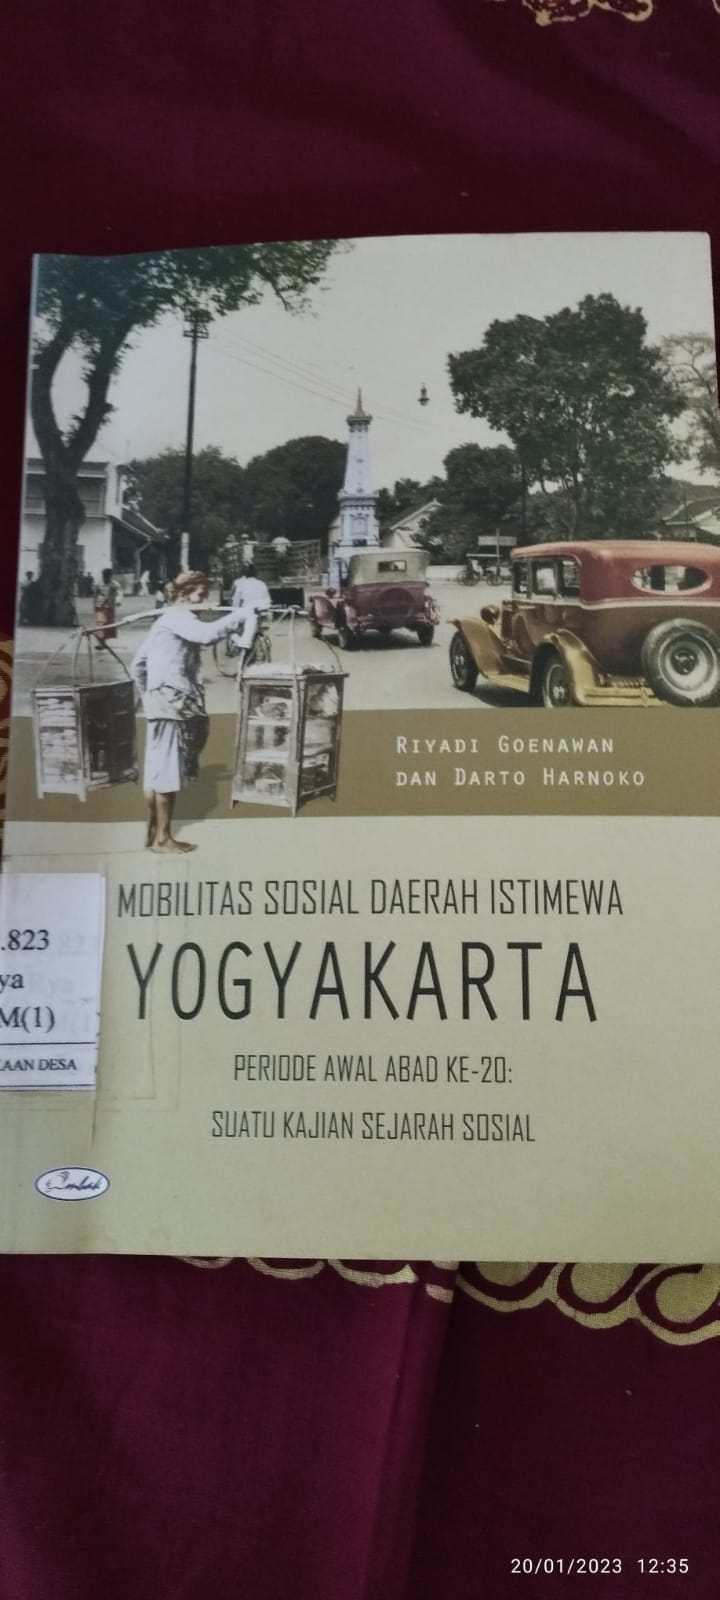 Mobilitas Sosial Daerah Istimewa Yogyakarta Periode Awal Abad ke-20: Suatu Kajian sejarah Sosial